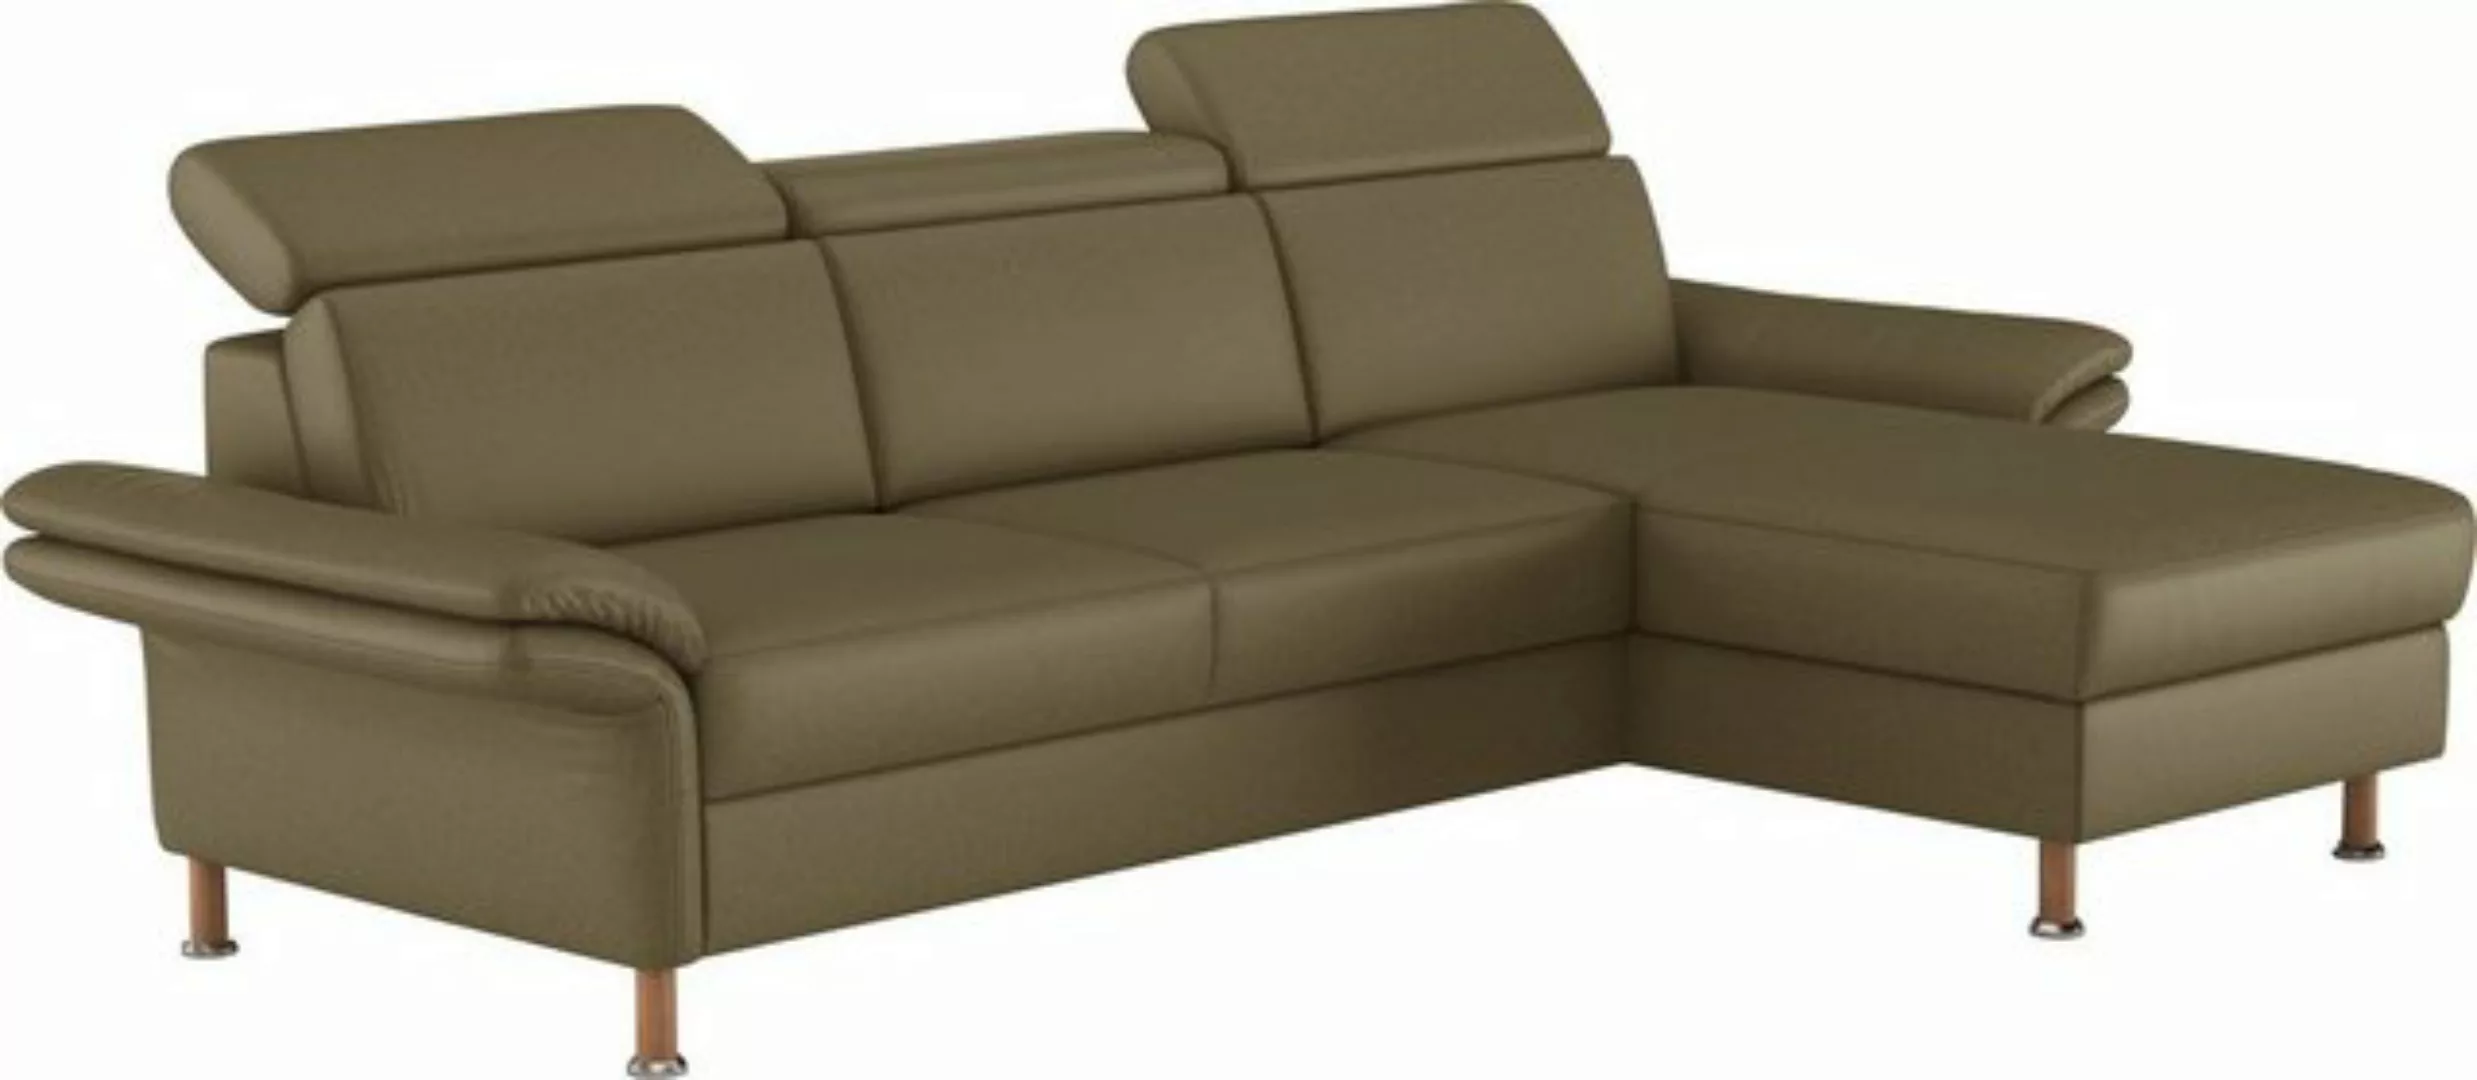 Home affaire Ecksofa "Calypso L-Form", mit motorischen Funktionen im Sofa u günstig online kaufen